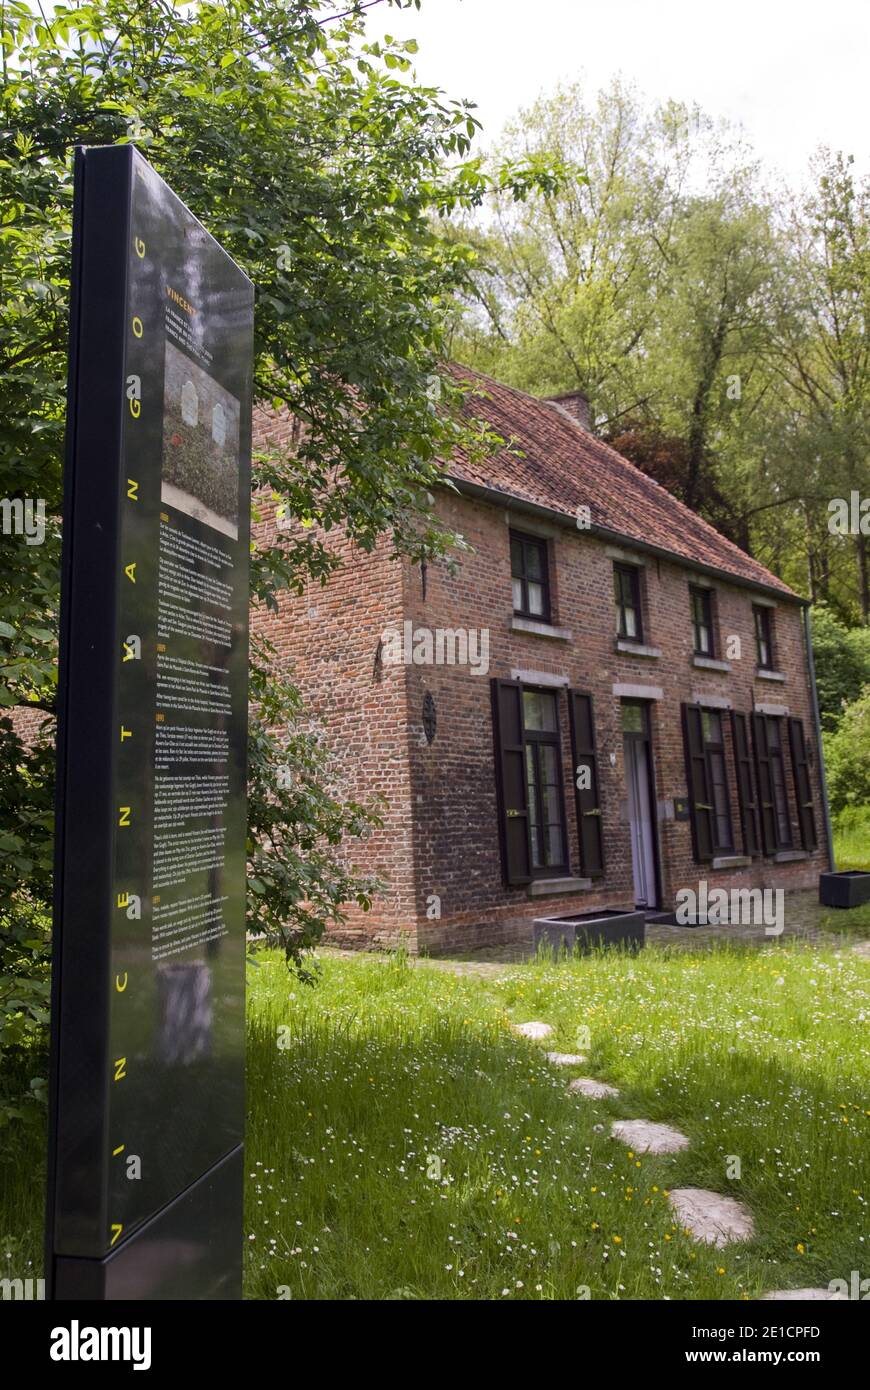 Une maison à Cuesmes (près de Mons) Belgique où l'artiste Vincent Van Gogh a vécu comme missionnaire chrétien auprès des mineurs de charbon, avant sa carrière artistique. Banque D'Images